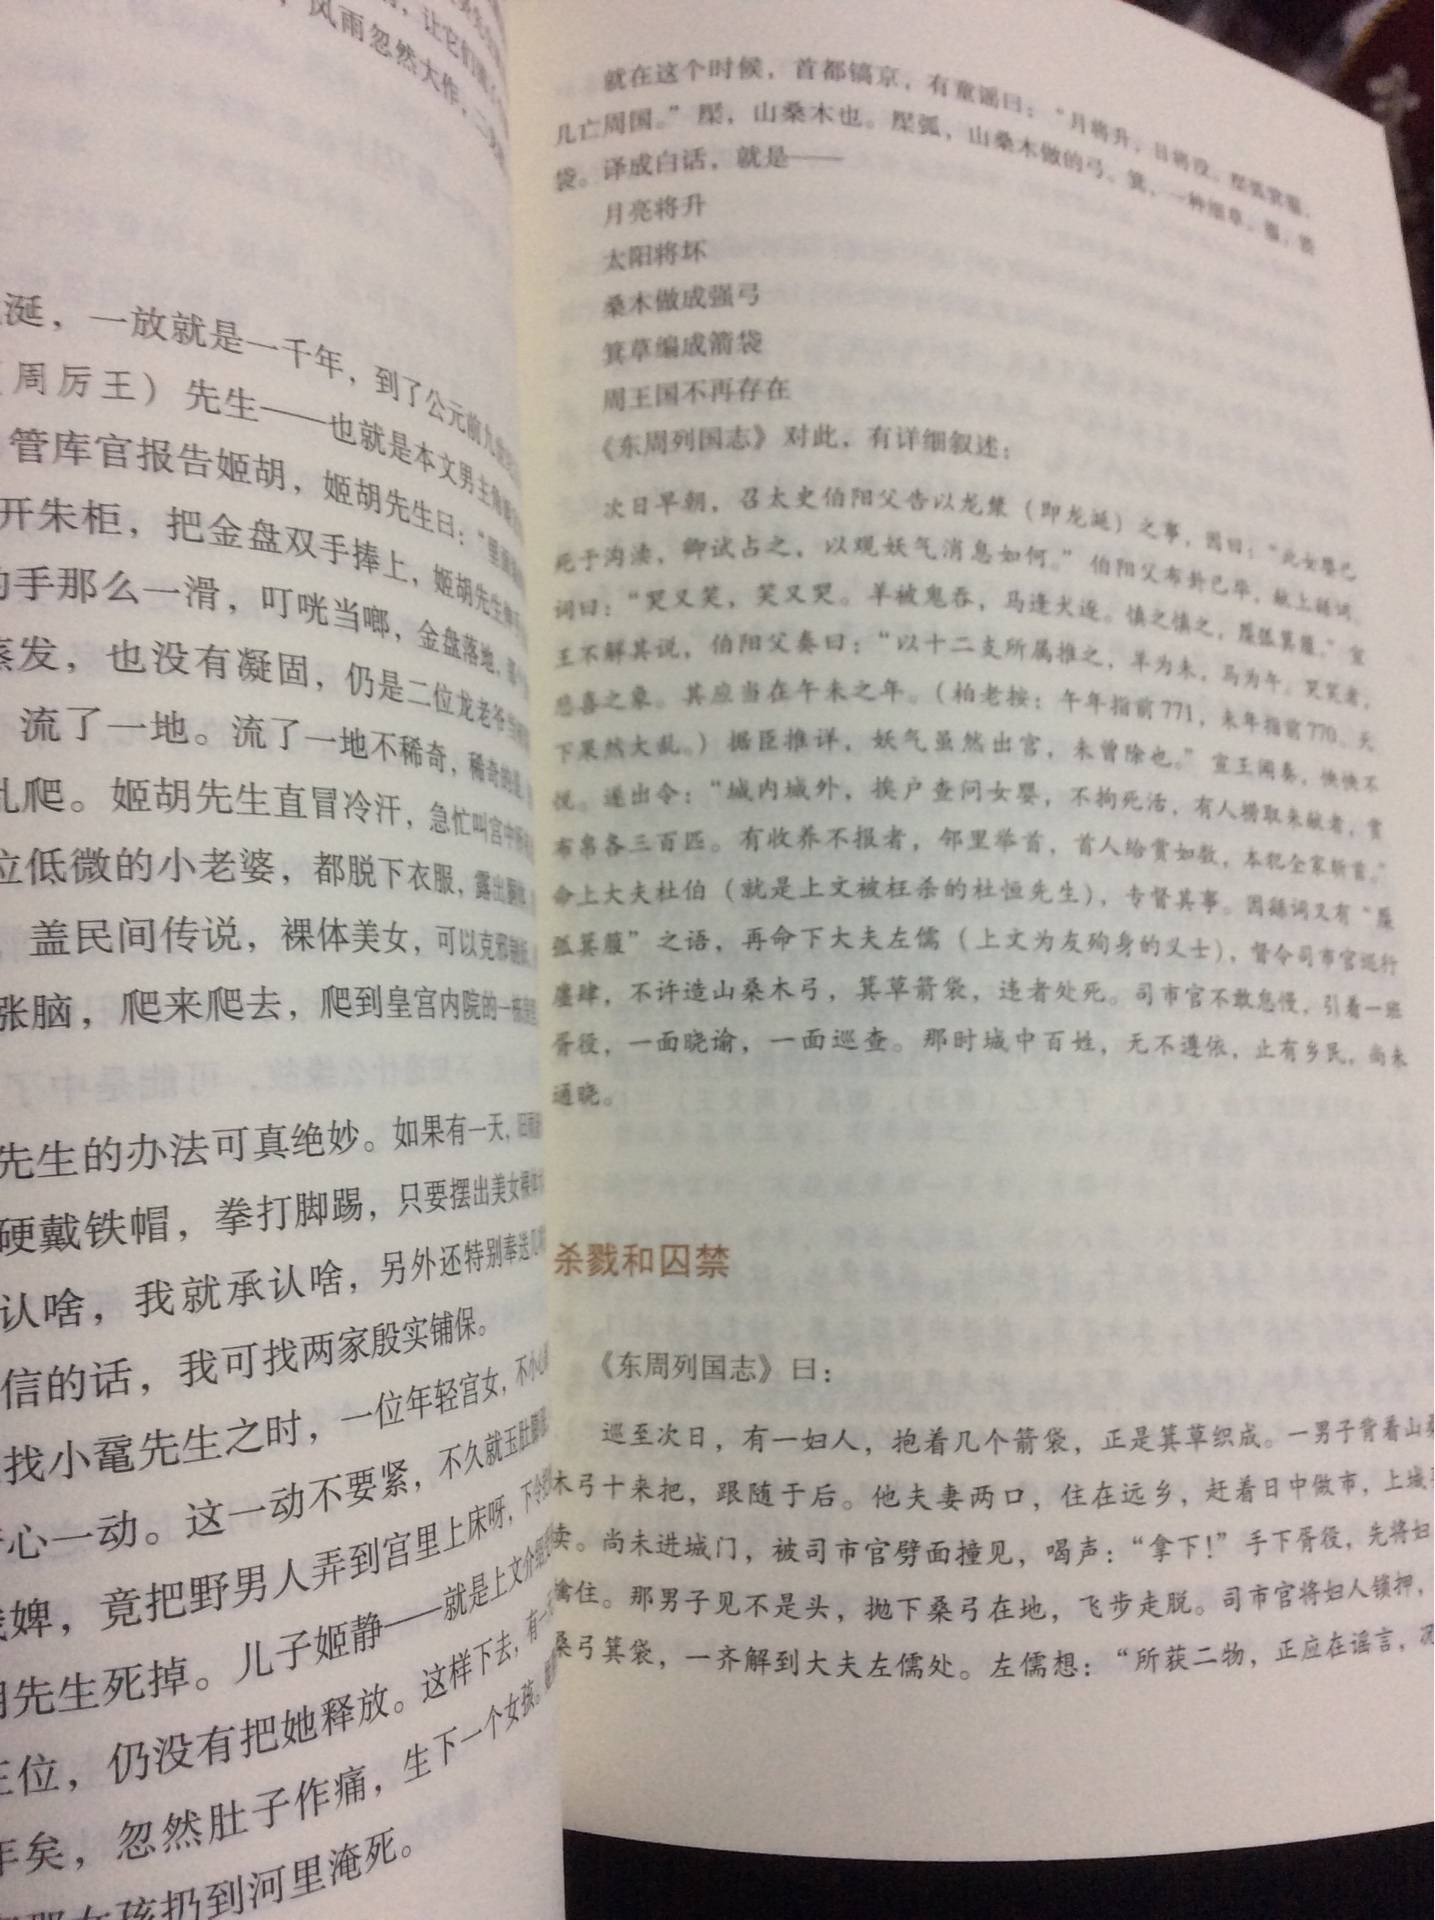 柏杨的名著，人民文学出版社新出版的。《帝王之死》讲的是中国历史上死得最难看的二十七位帝王。柏杨曰：我用杂文体写历史，形式上嬉笑怒骂，内心沉重无比。